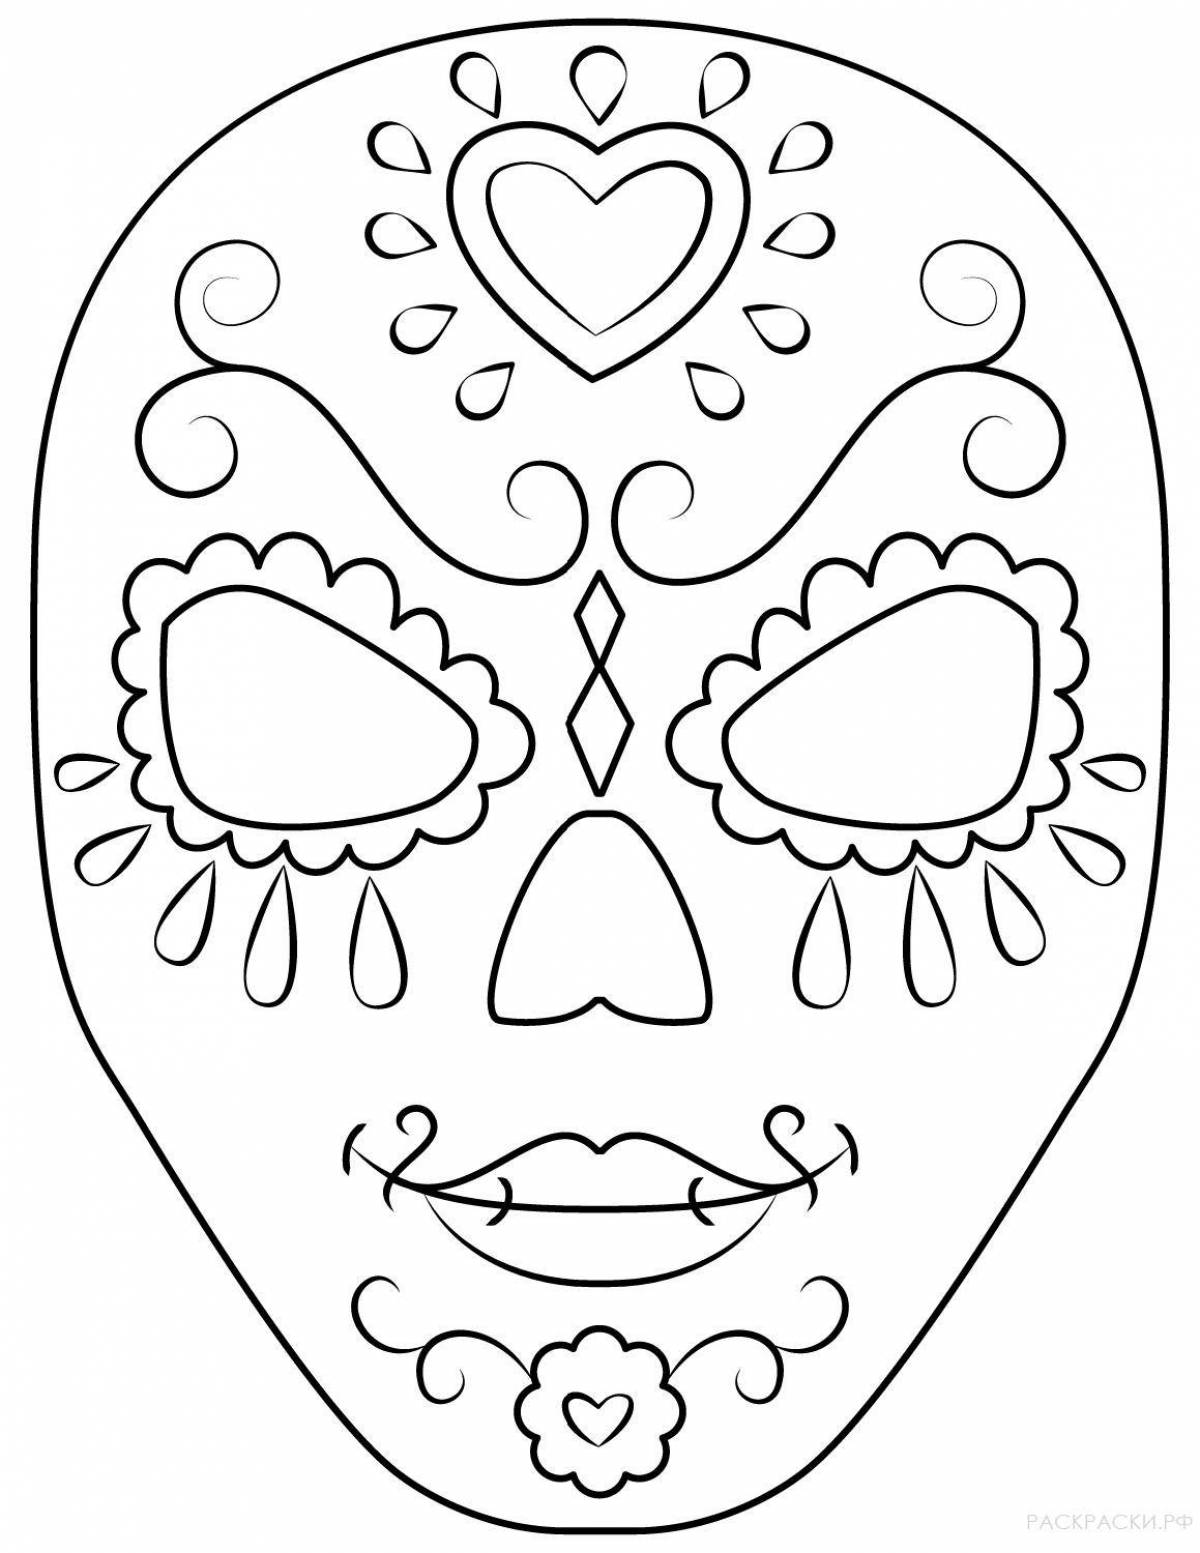 Coloring sheet joyful face mask